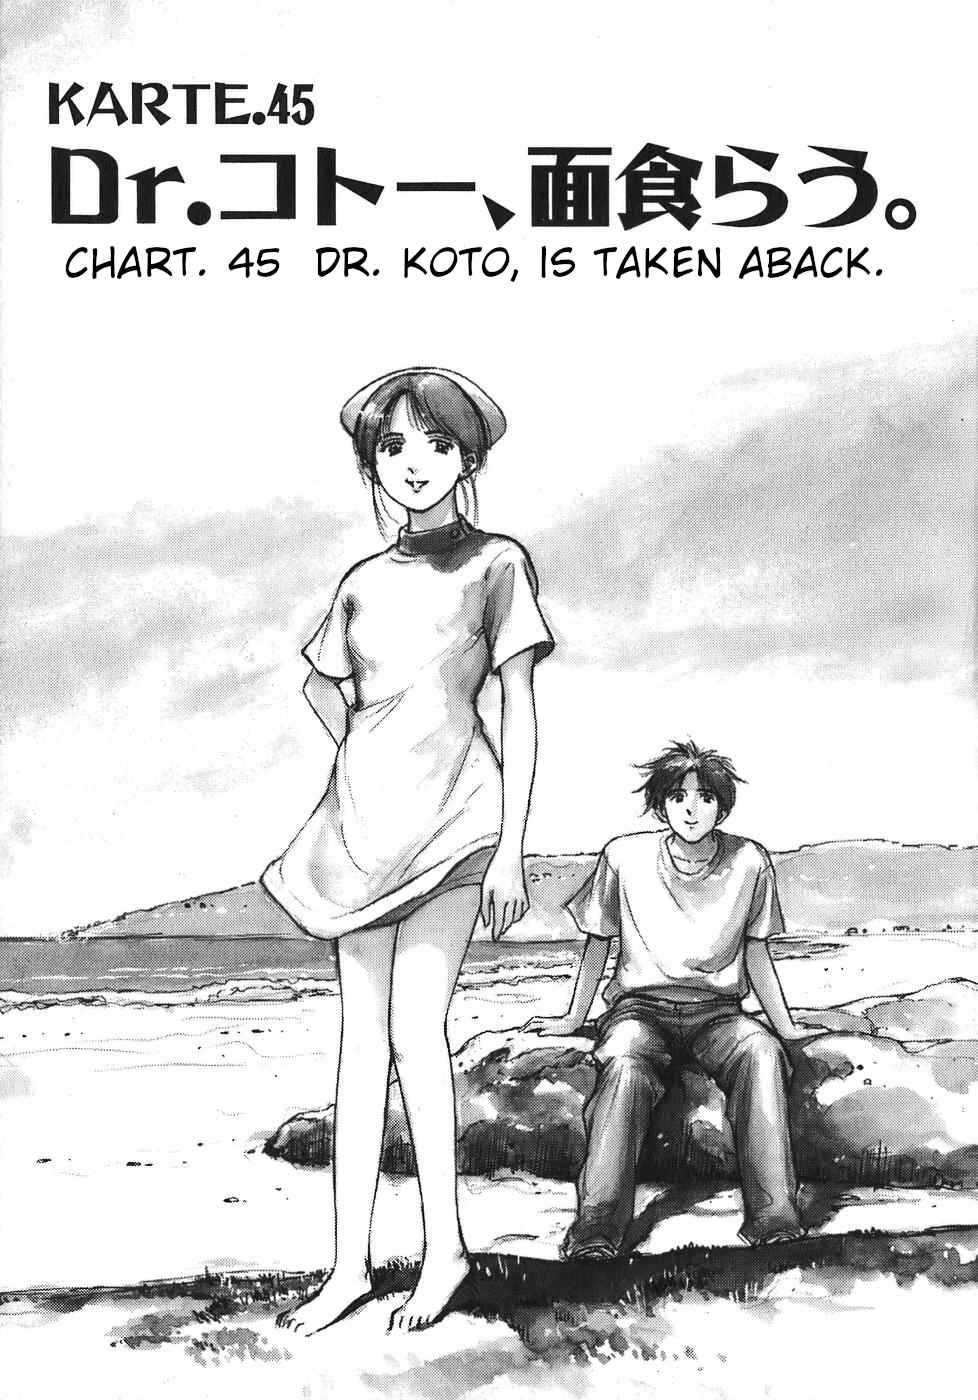 Dr. Koto Shinryoujo Vol. 5 Ch. 45 Dr. Koto is Taken Aback